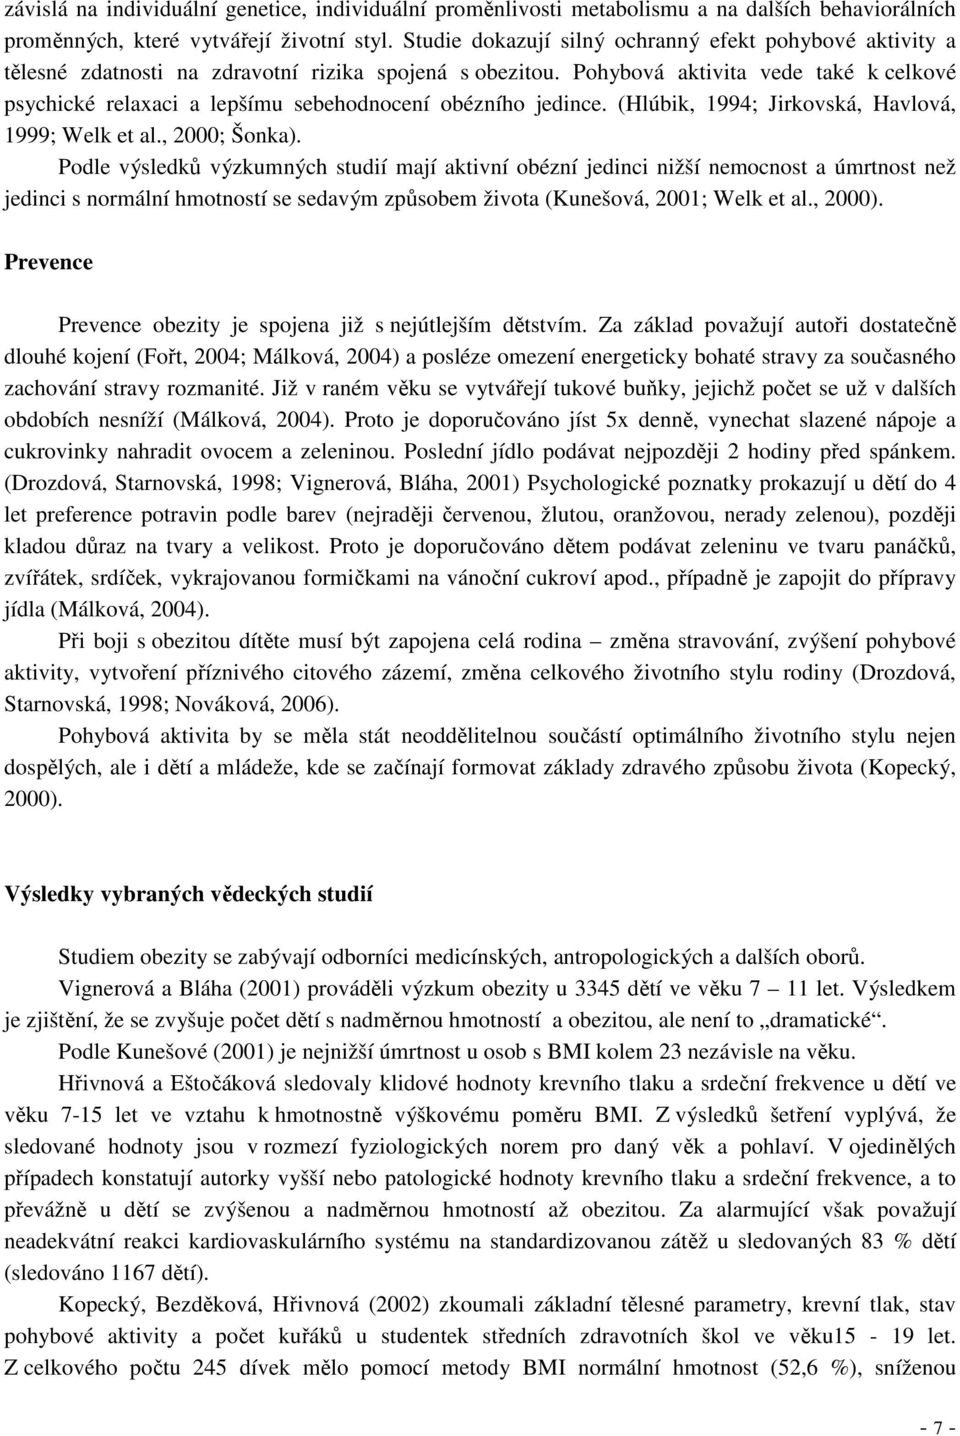 Pohybová aktivita vede také k celkové psychické relaxaci a lepšímu sebehodnocení obézního jedince. (Hlúbik, 1994; Jirkovská, Havlová, 1999; Welk et al., 2000; Šonka).